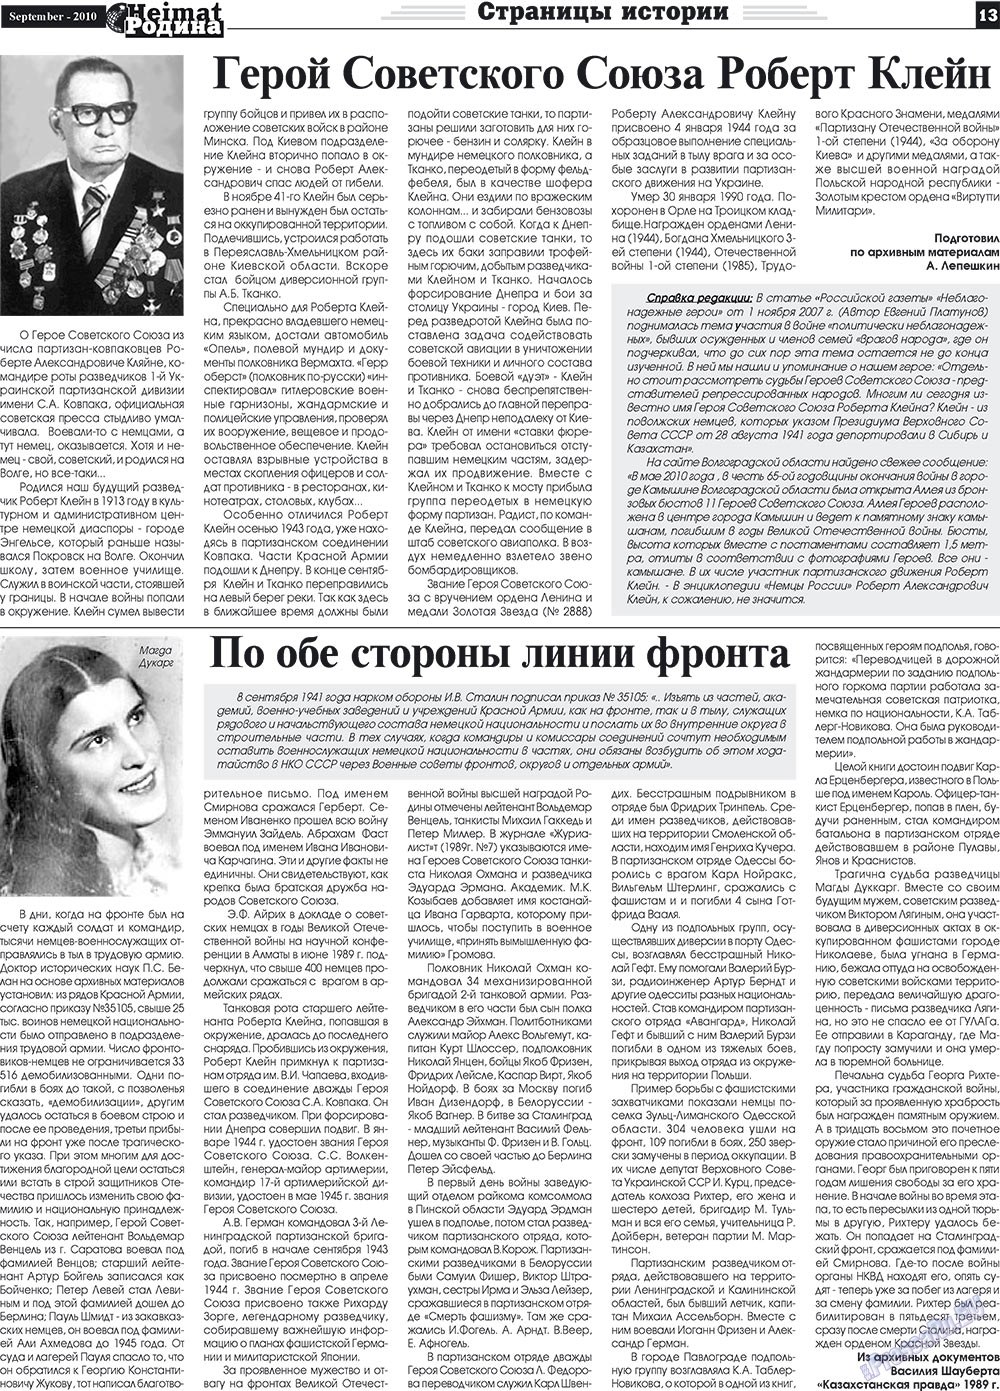 Heimat-Родина (газета). 2010 год, номер 9, стр. 13